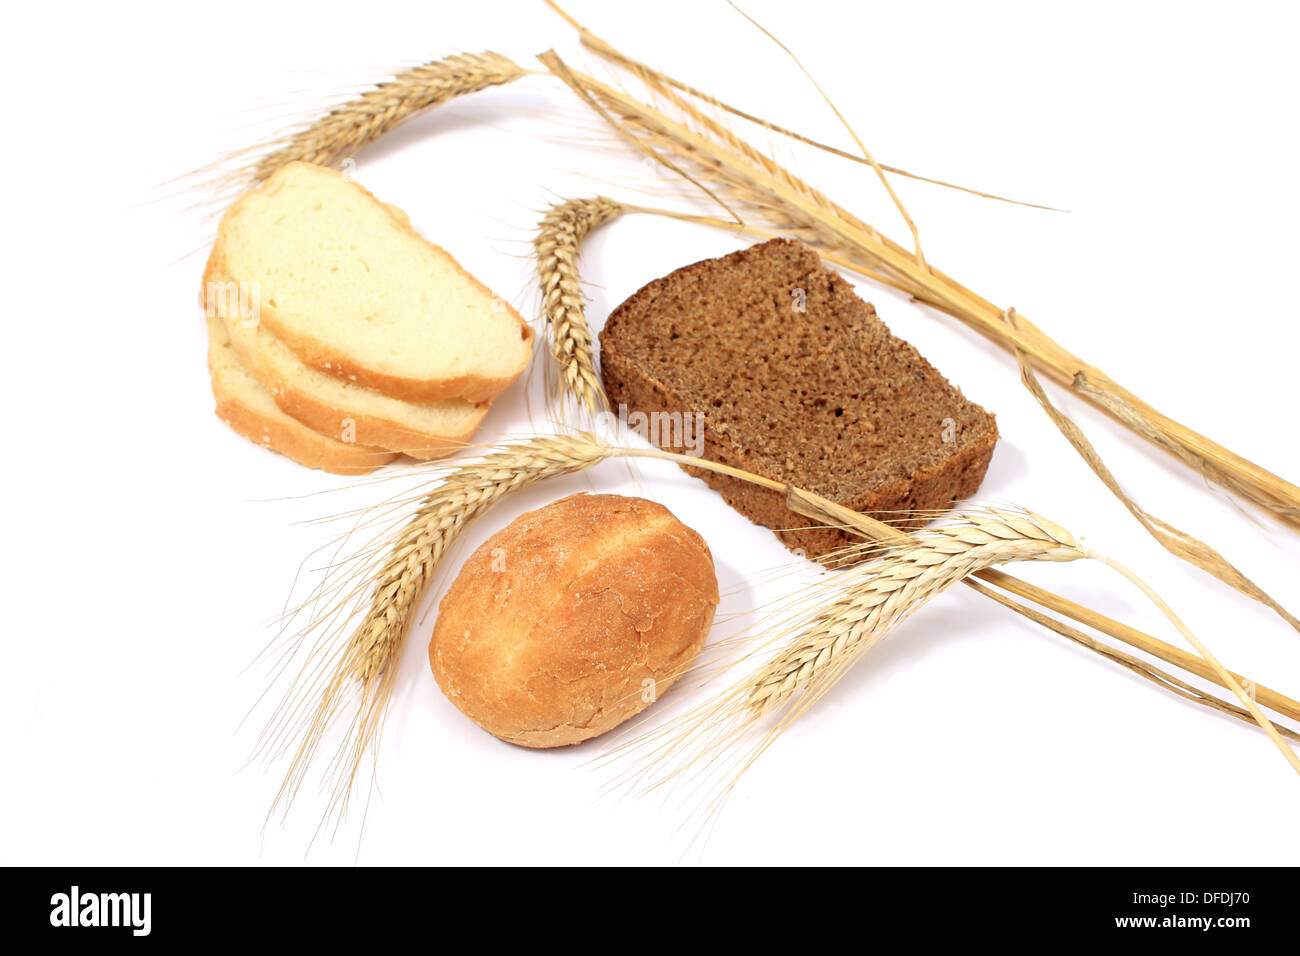 Brot Brötchen und Halme des Weizens auf weißem Hintergrund, Хлеб булочки и стебли колоски пшеницы на белом фоне Stockfoto